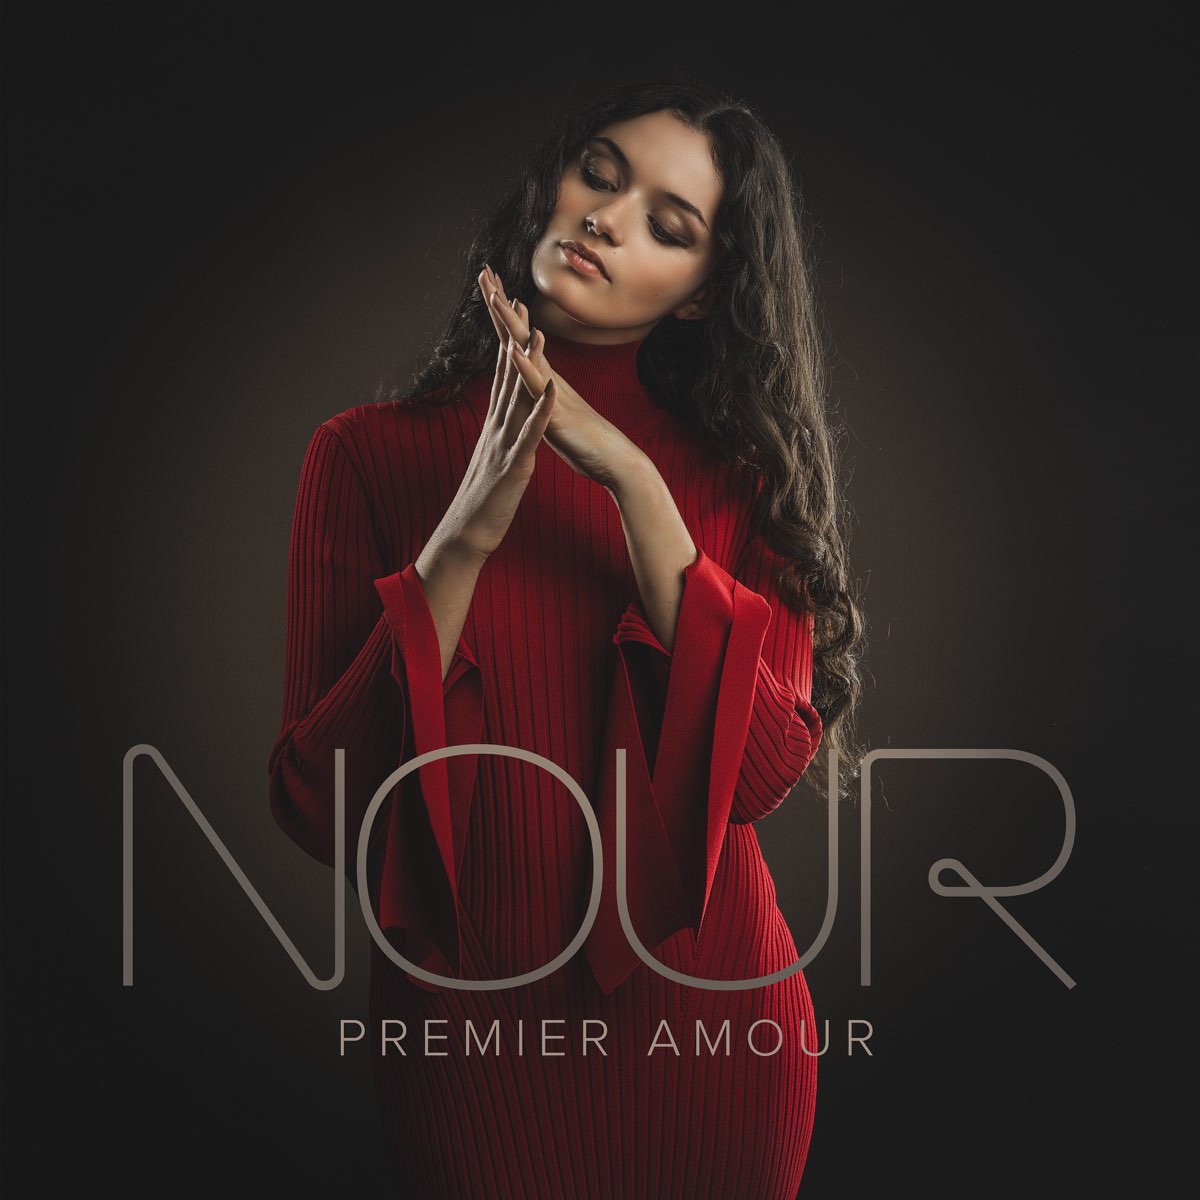 Nour певица. Premier amour. Tourgueniev "Premier amour". Premier amour (2002). Nicole hugo morgen